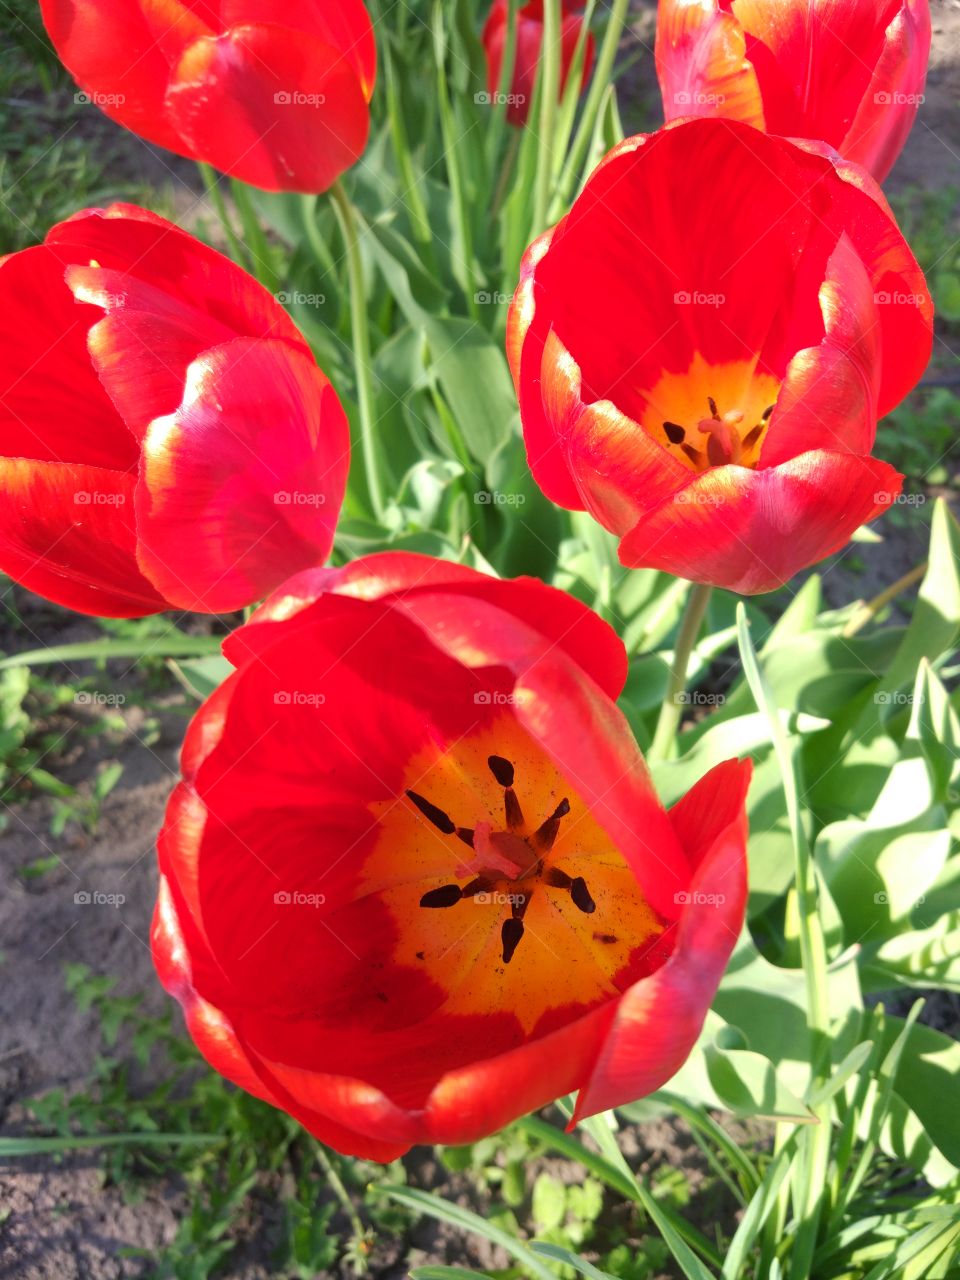 Amazing tulips